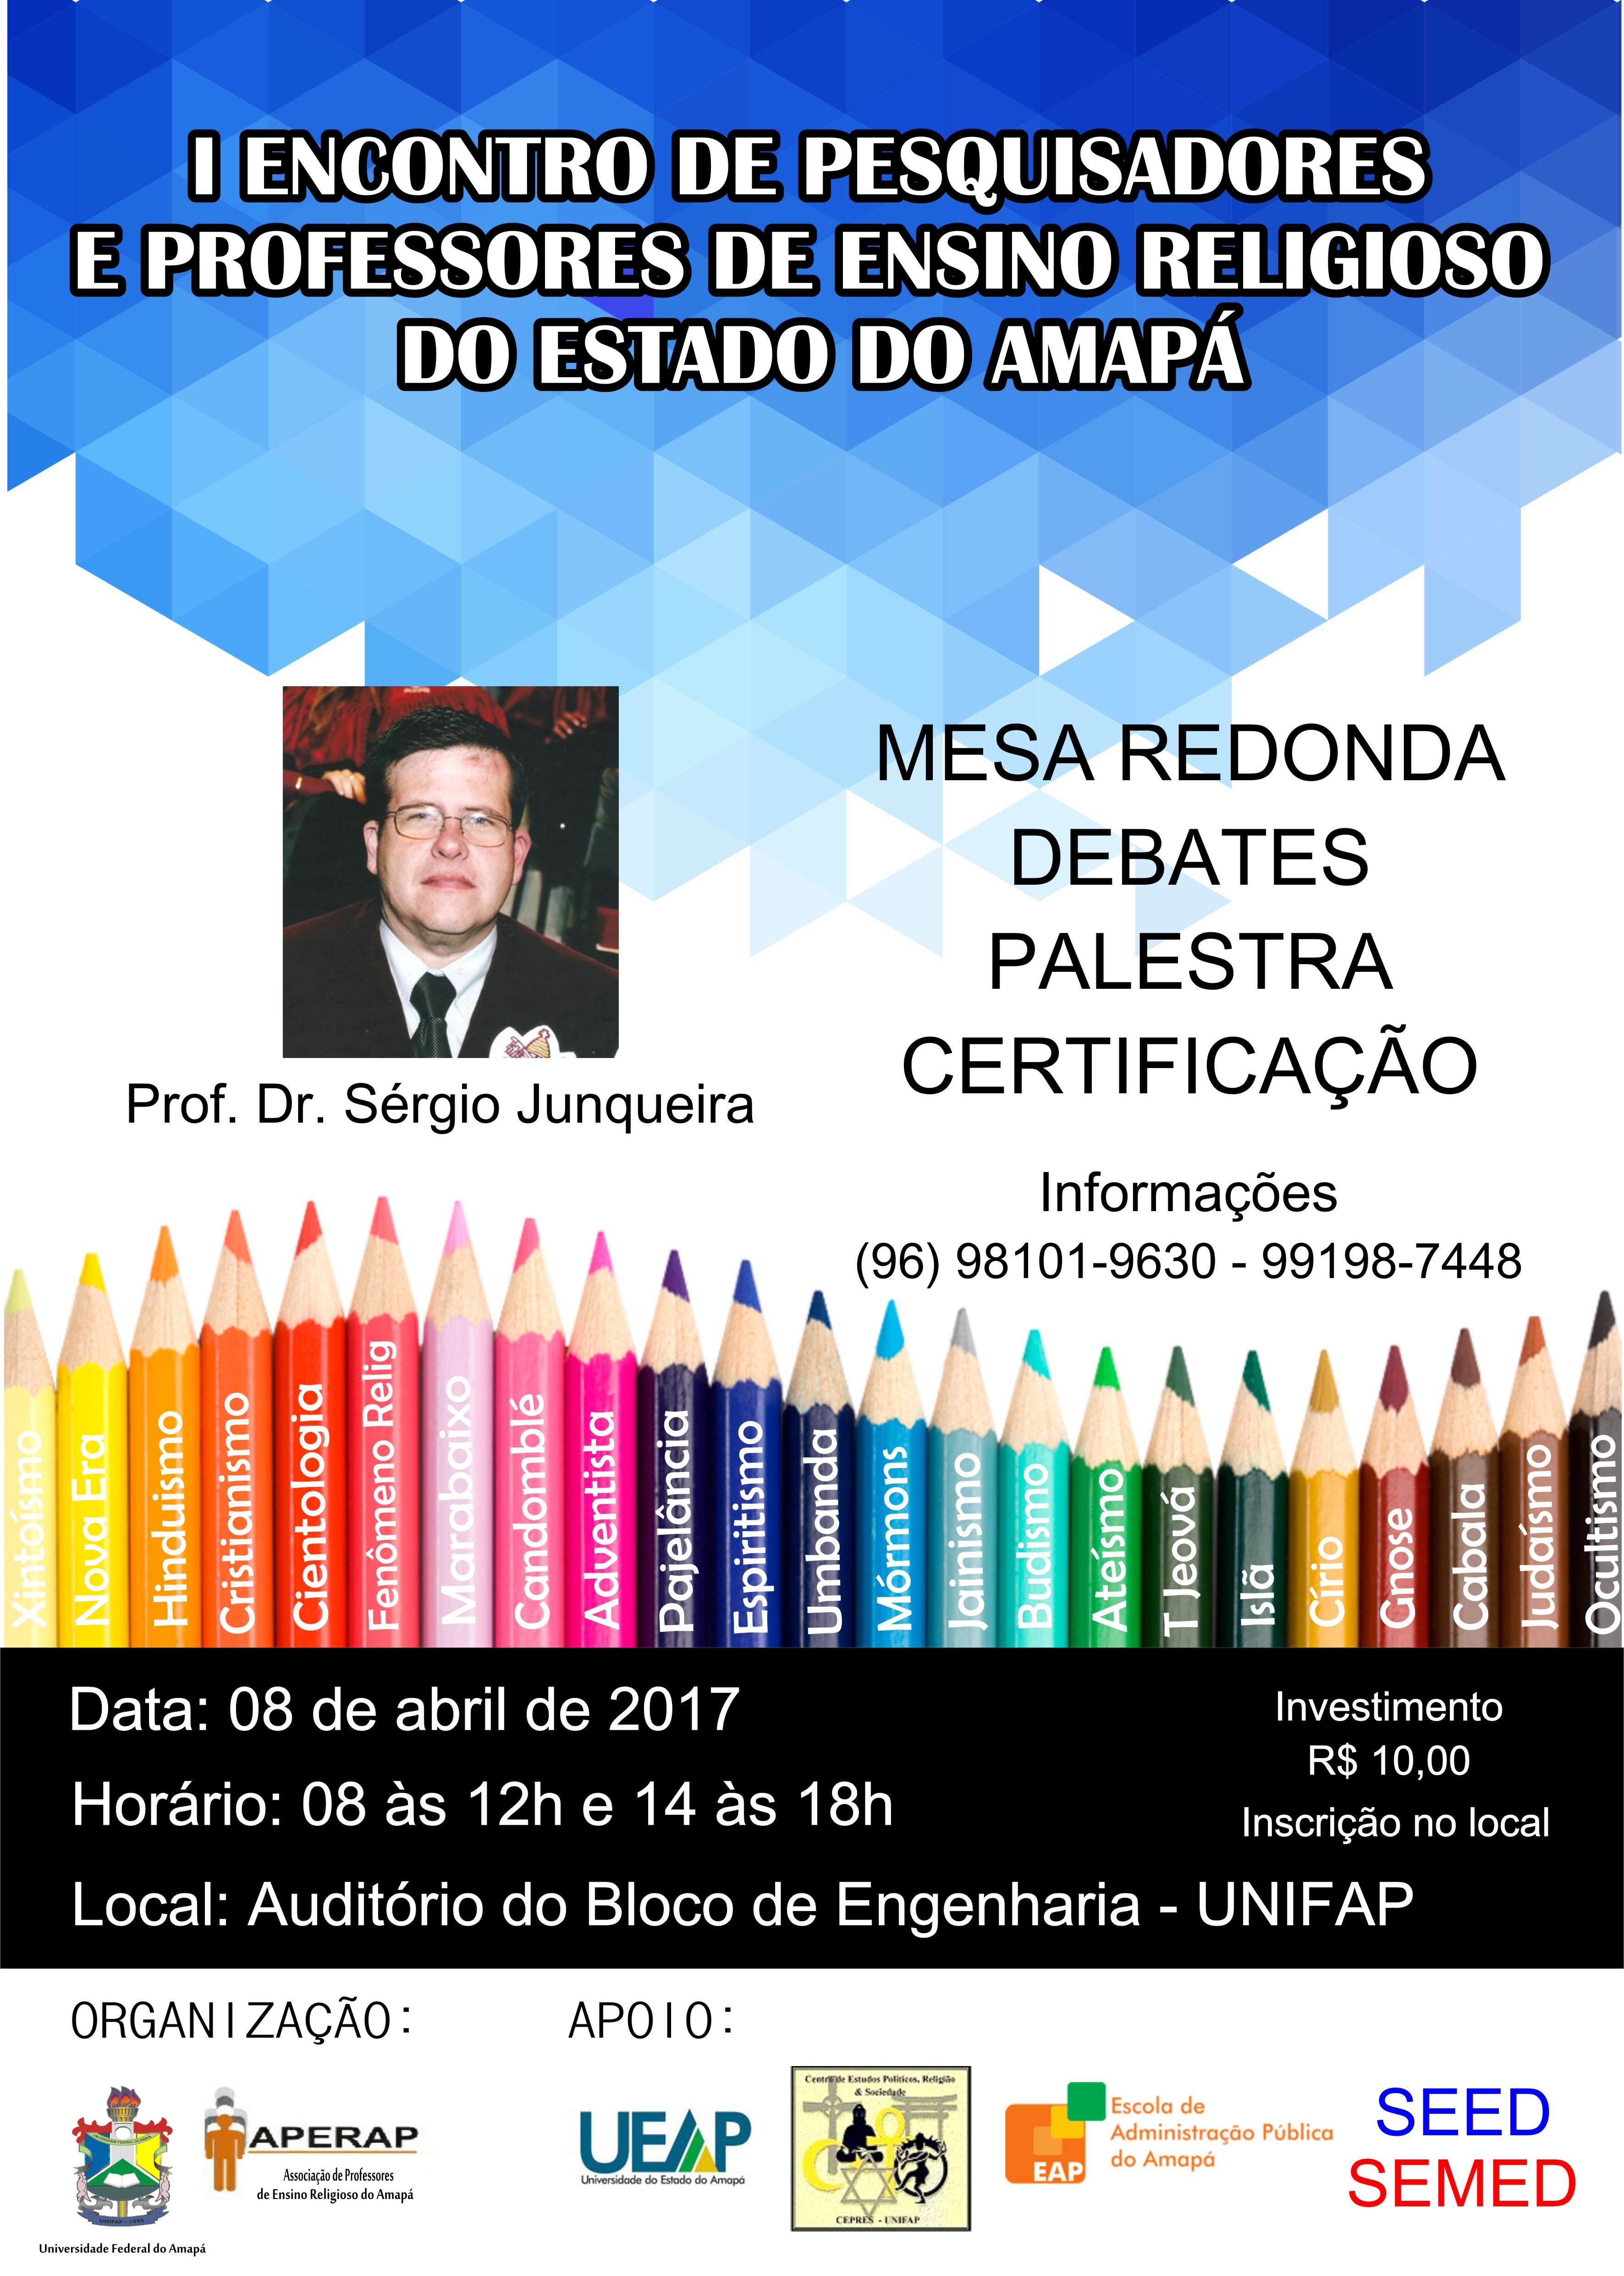 Evento reúne professores do AP e CE para debater temas sociológicos - UNIFAP